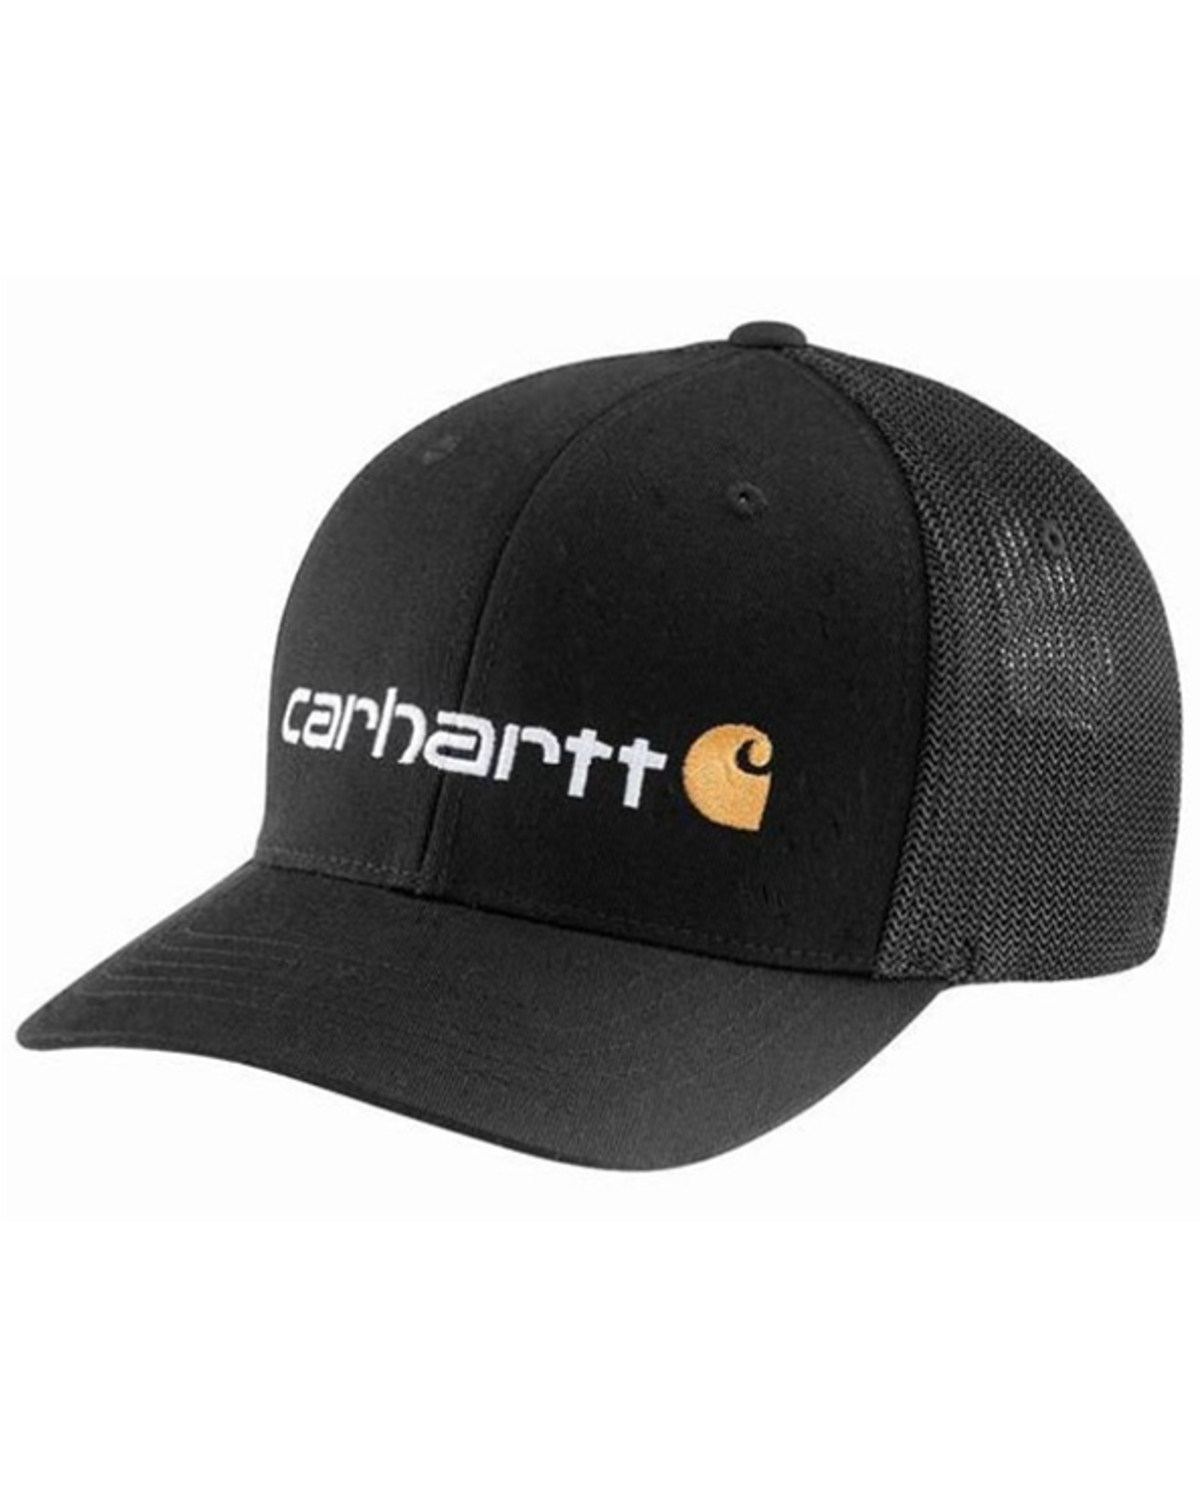 Carhartt Men's Embroidered Logo Rugged Flex Ball Cap